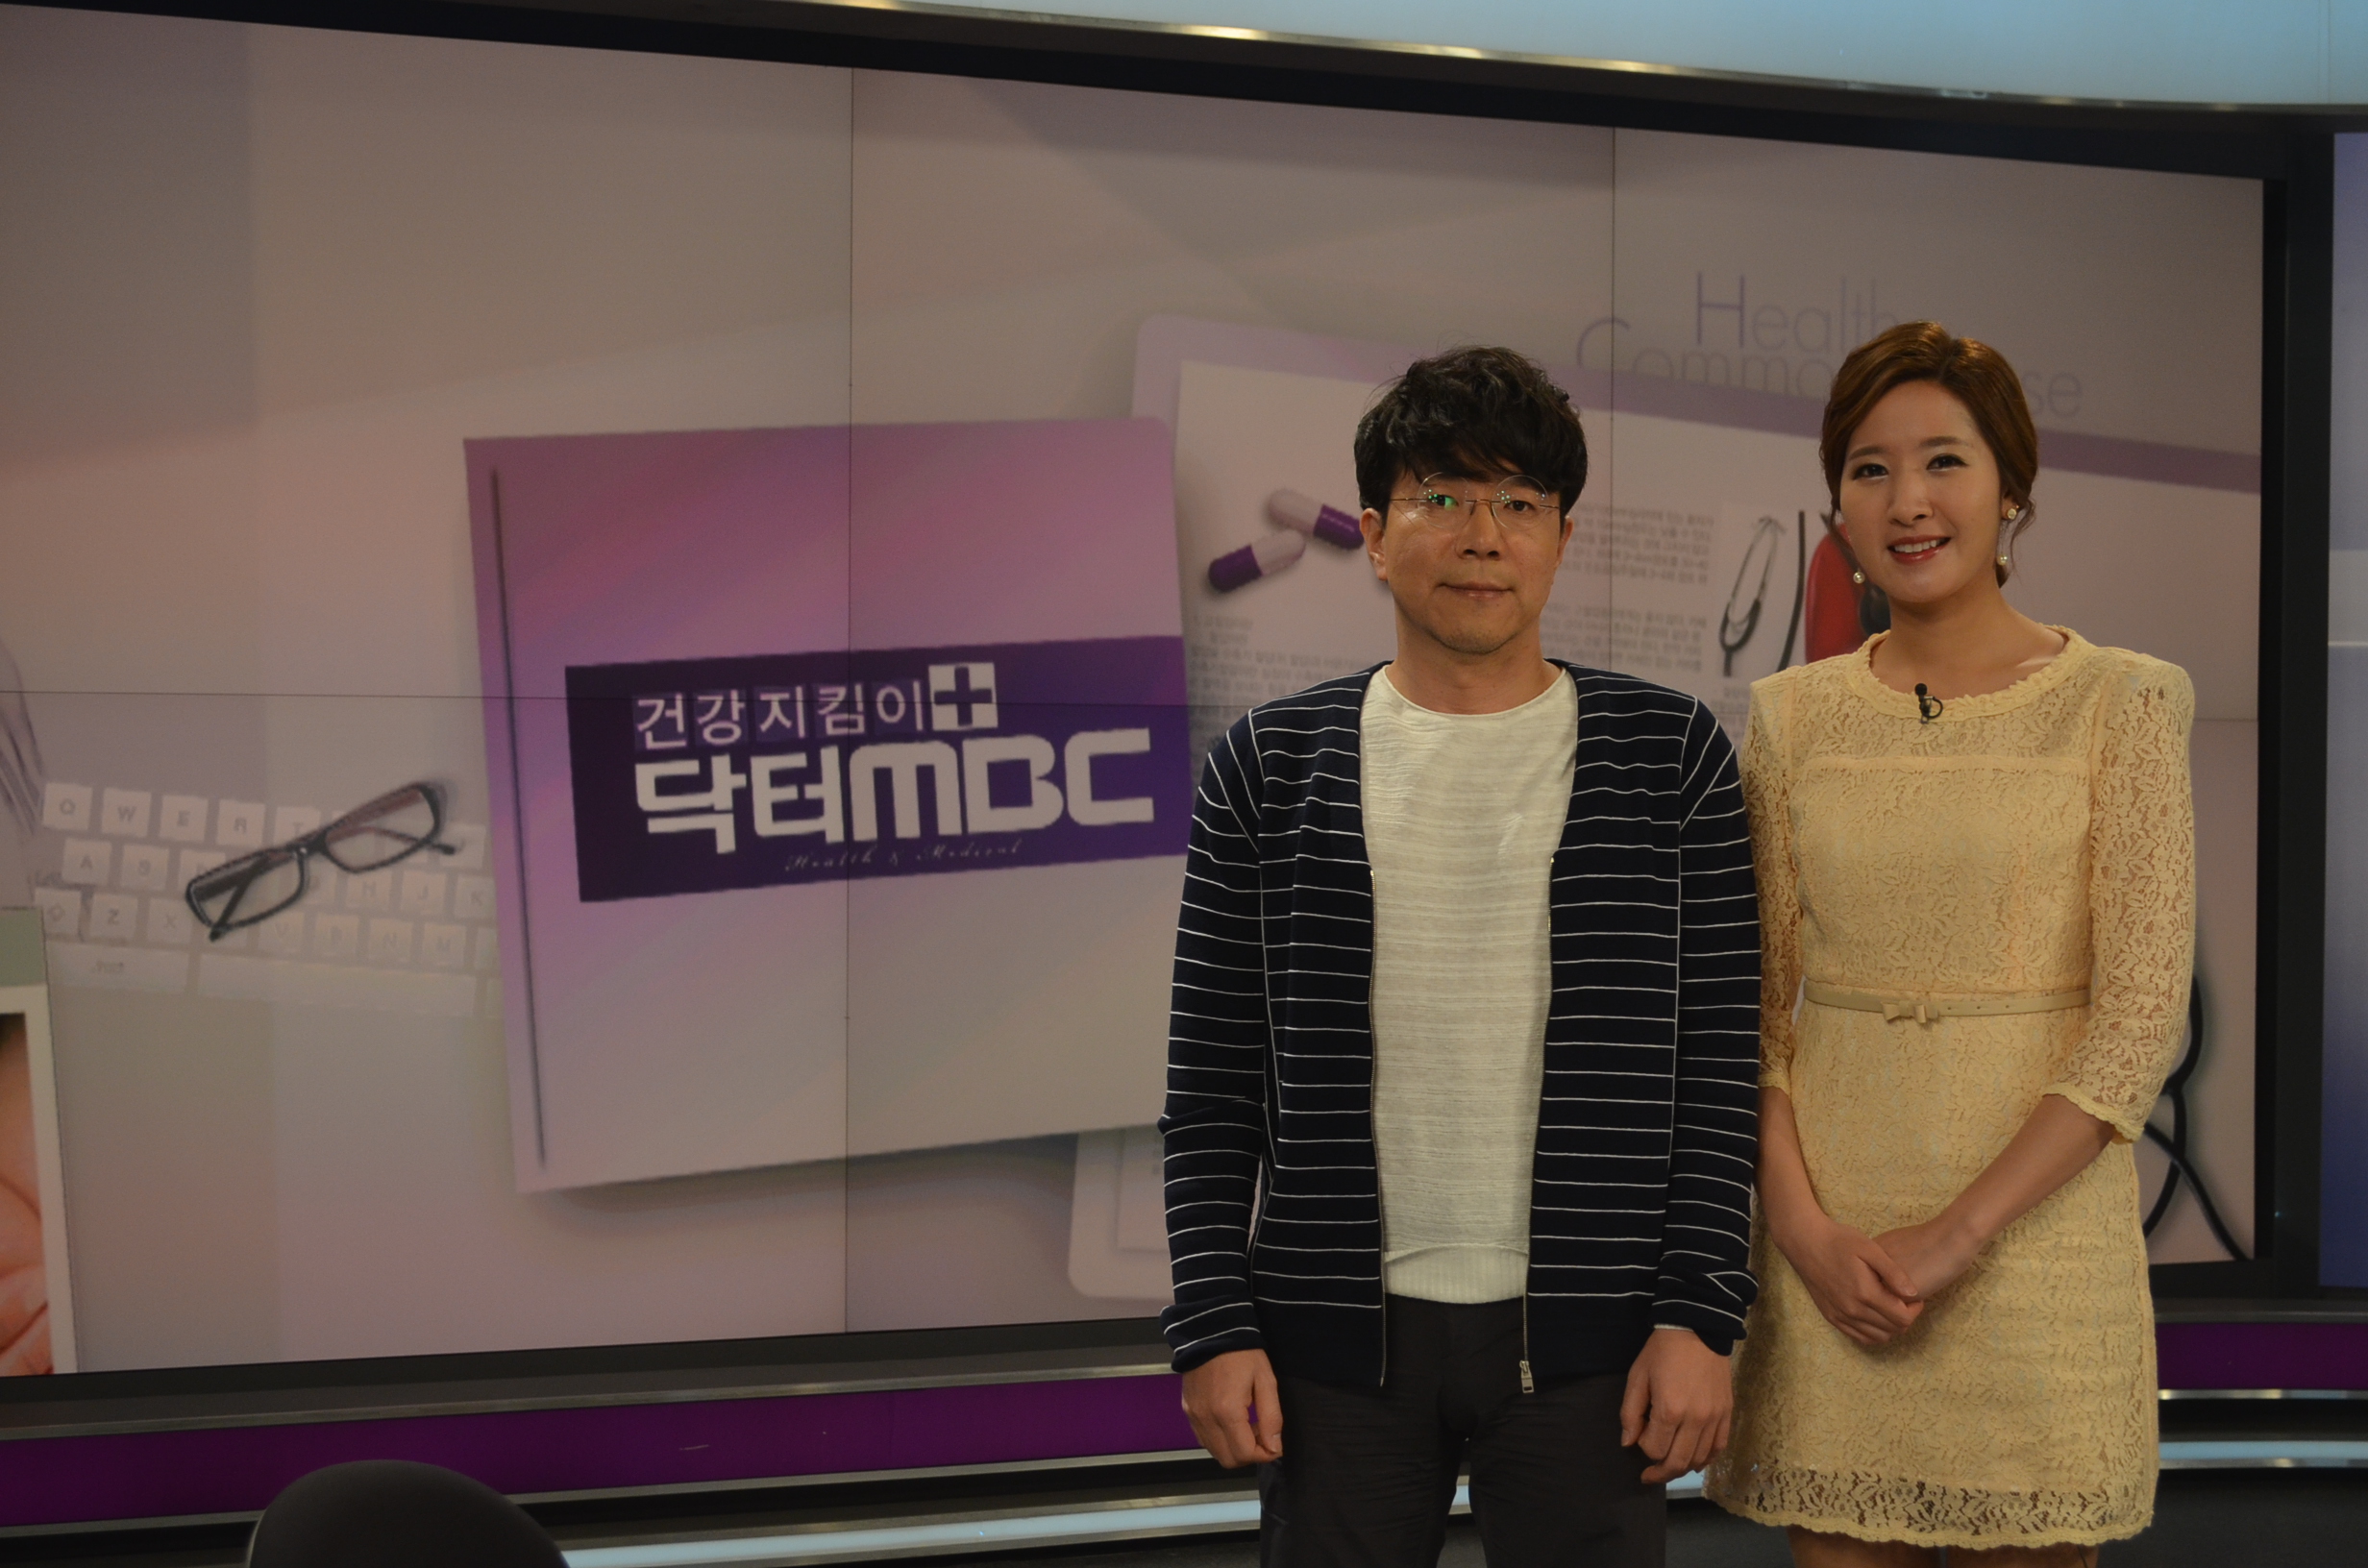 임건묵 대표원장님 봄철피부관리 관련 MBC방송 영상입니다.